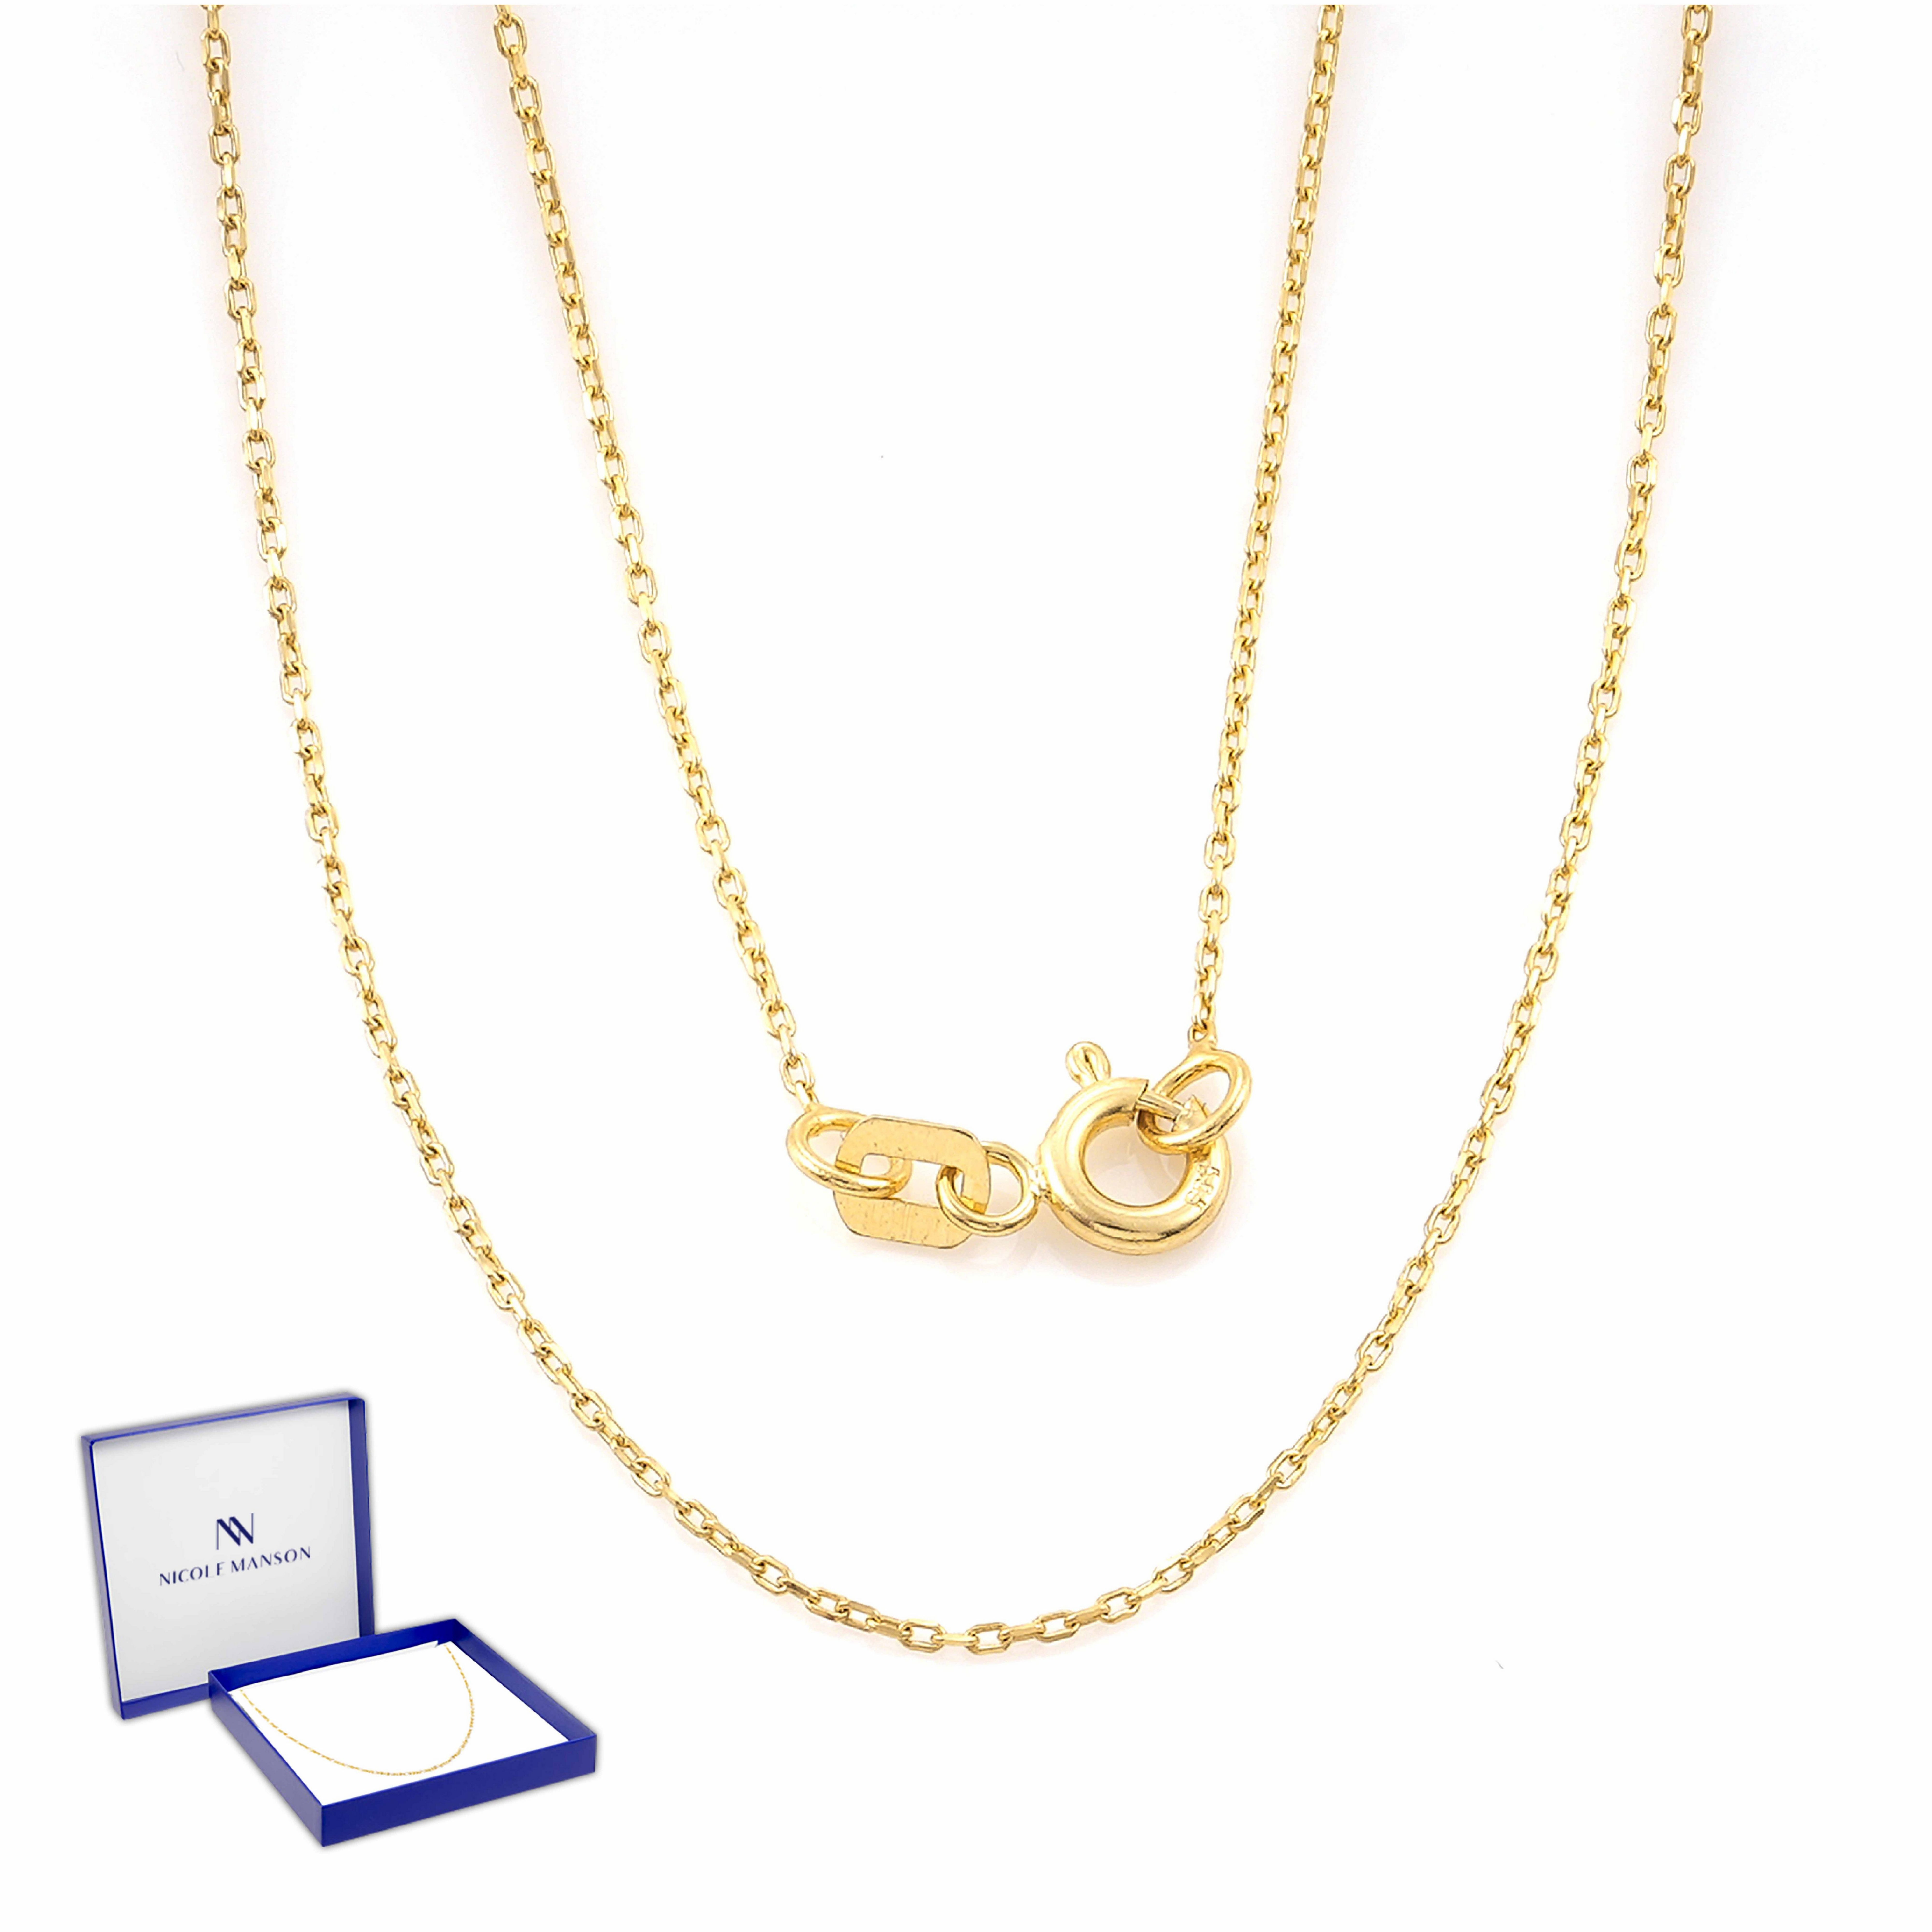 Nicole Manson Goldkette Halskette 585 Gold 14K 40 - 60 cm Echtgold Goldkette, Ankerkette